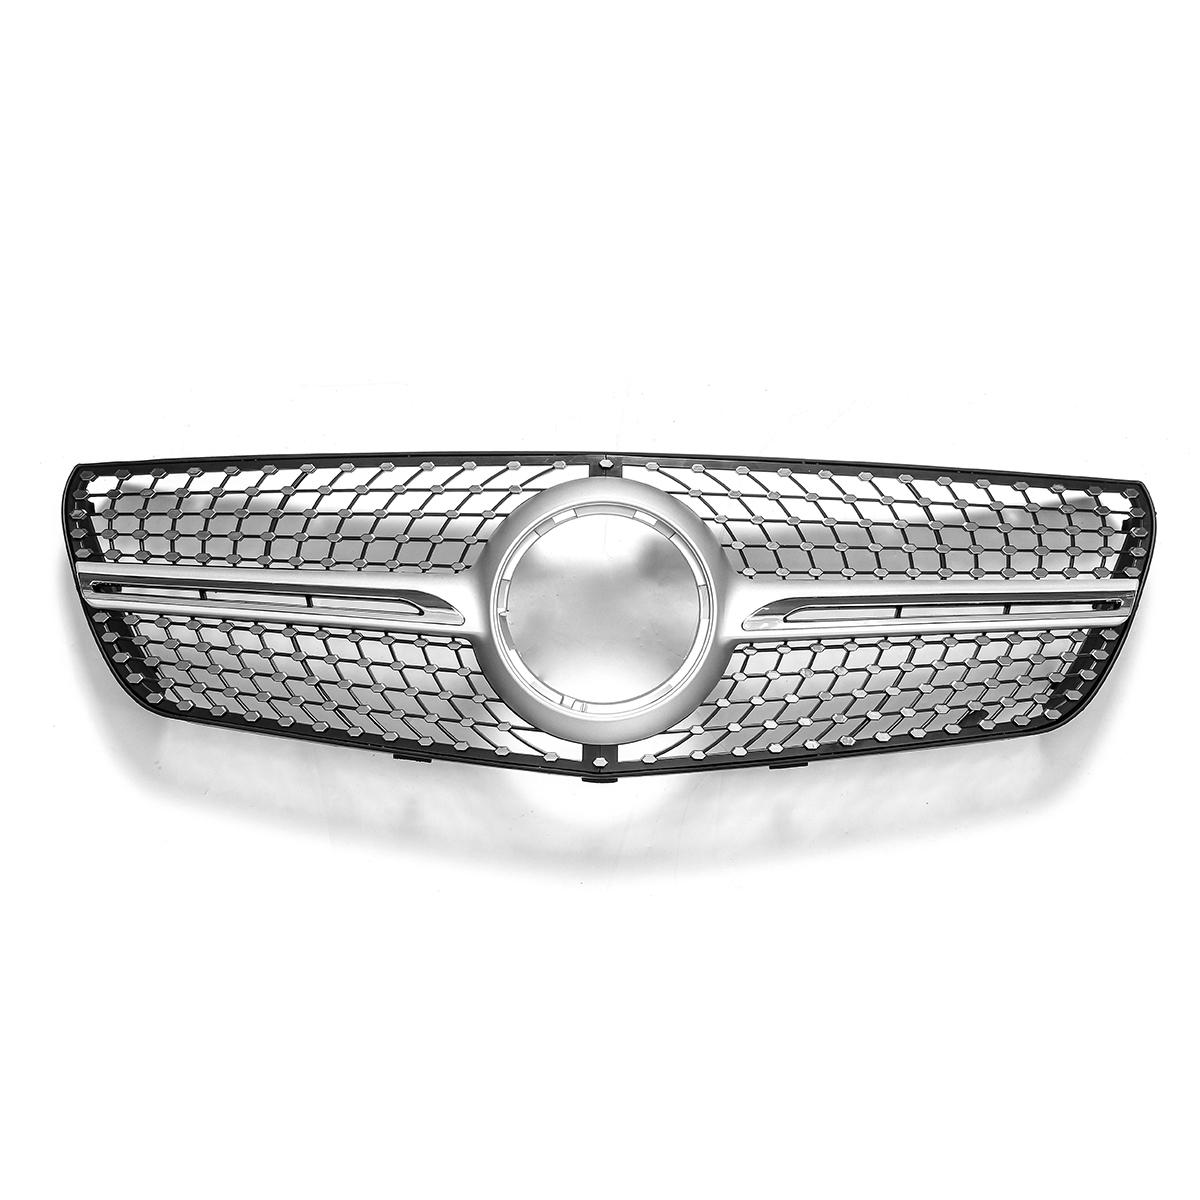 Diamond Look voorbumper grille grill zilver voor Mercedes Benz Vito 2015-2018